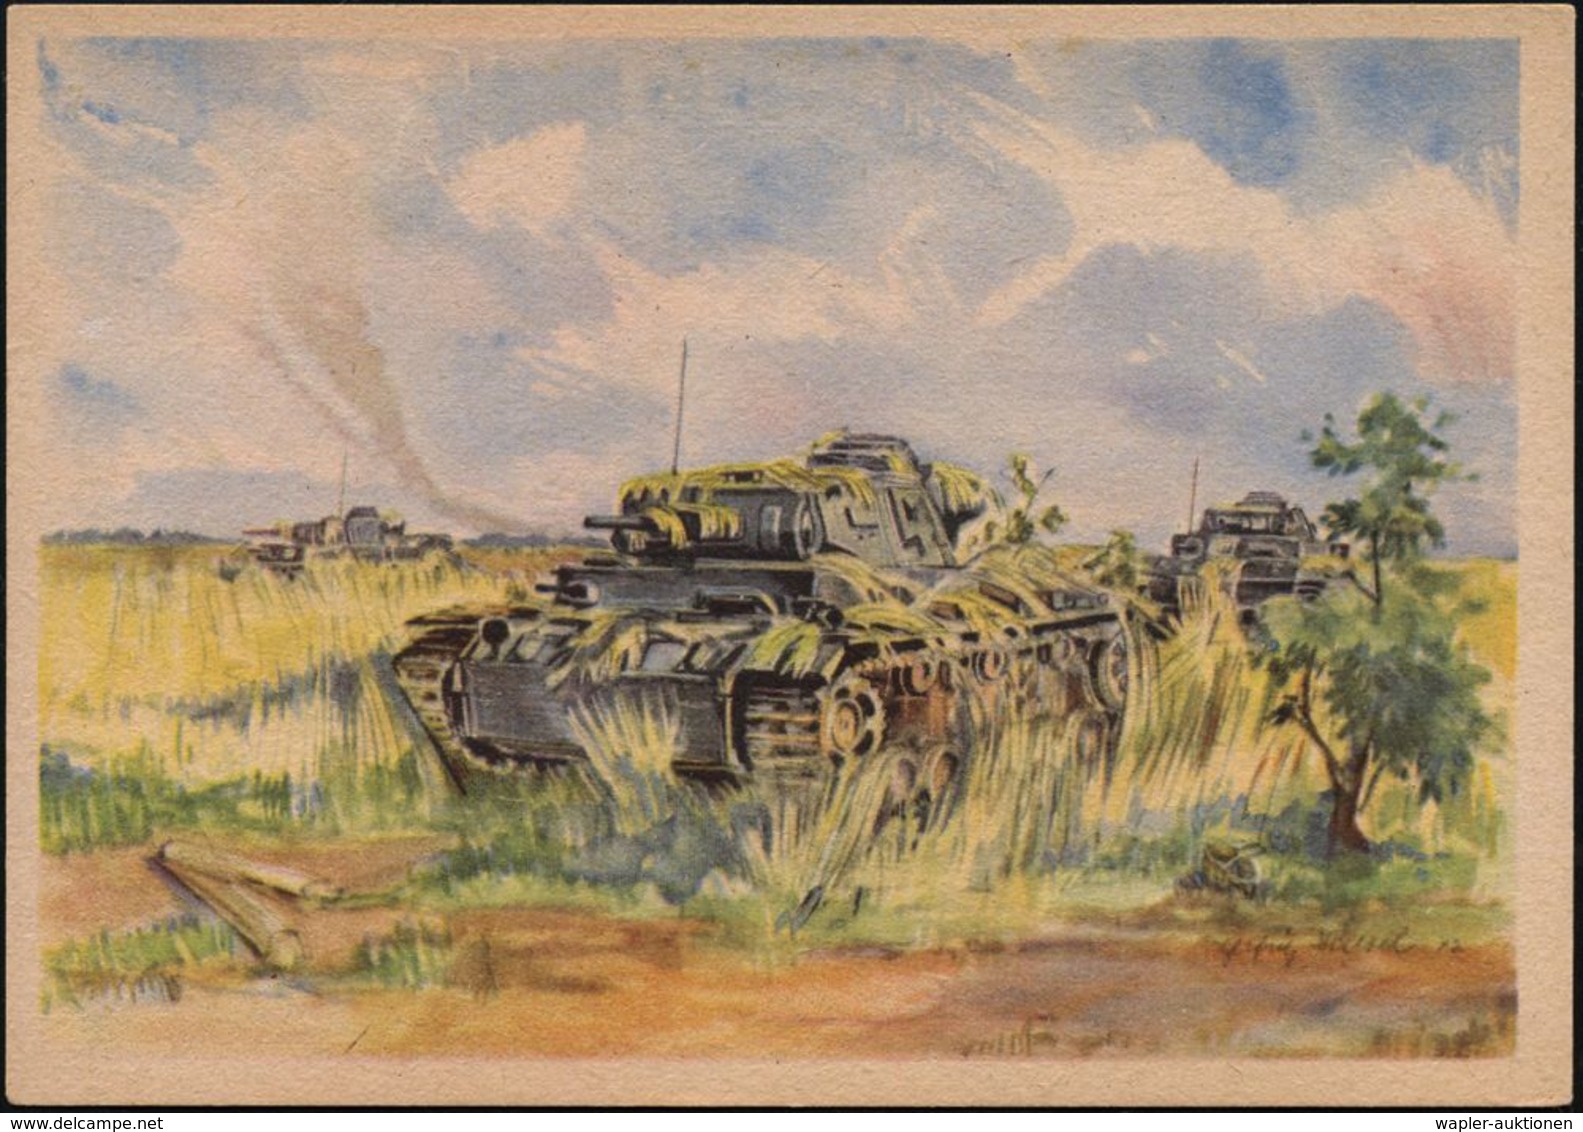 GEPANZERTE KRAFTFAHRZEUGE / PANZER : DEUTSCHES REICH 1942 Color-Künstler-Propaganda-Ak.: GETARNTE PANZER = 3 Panzer III  - Autres (Terre)